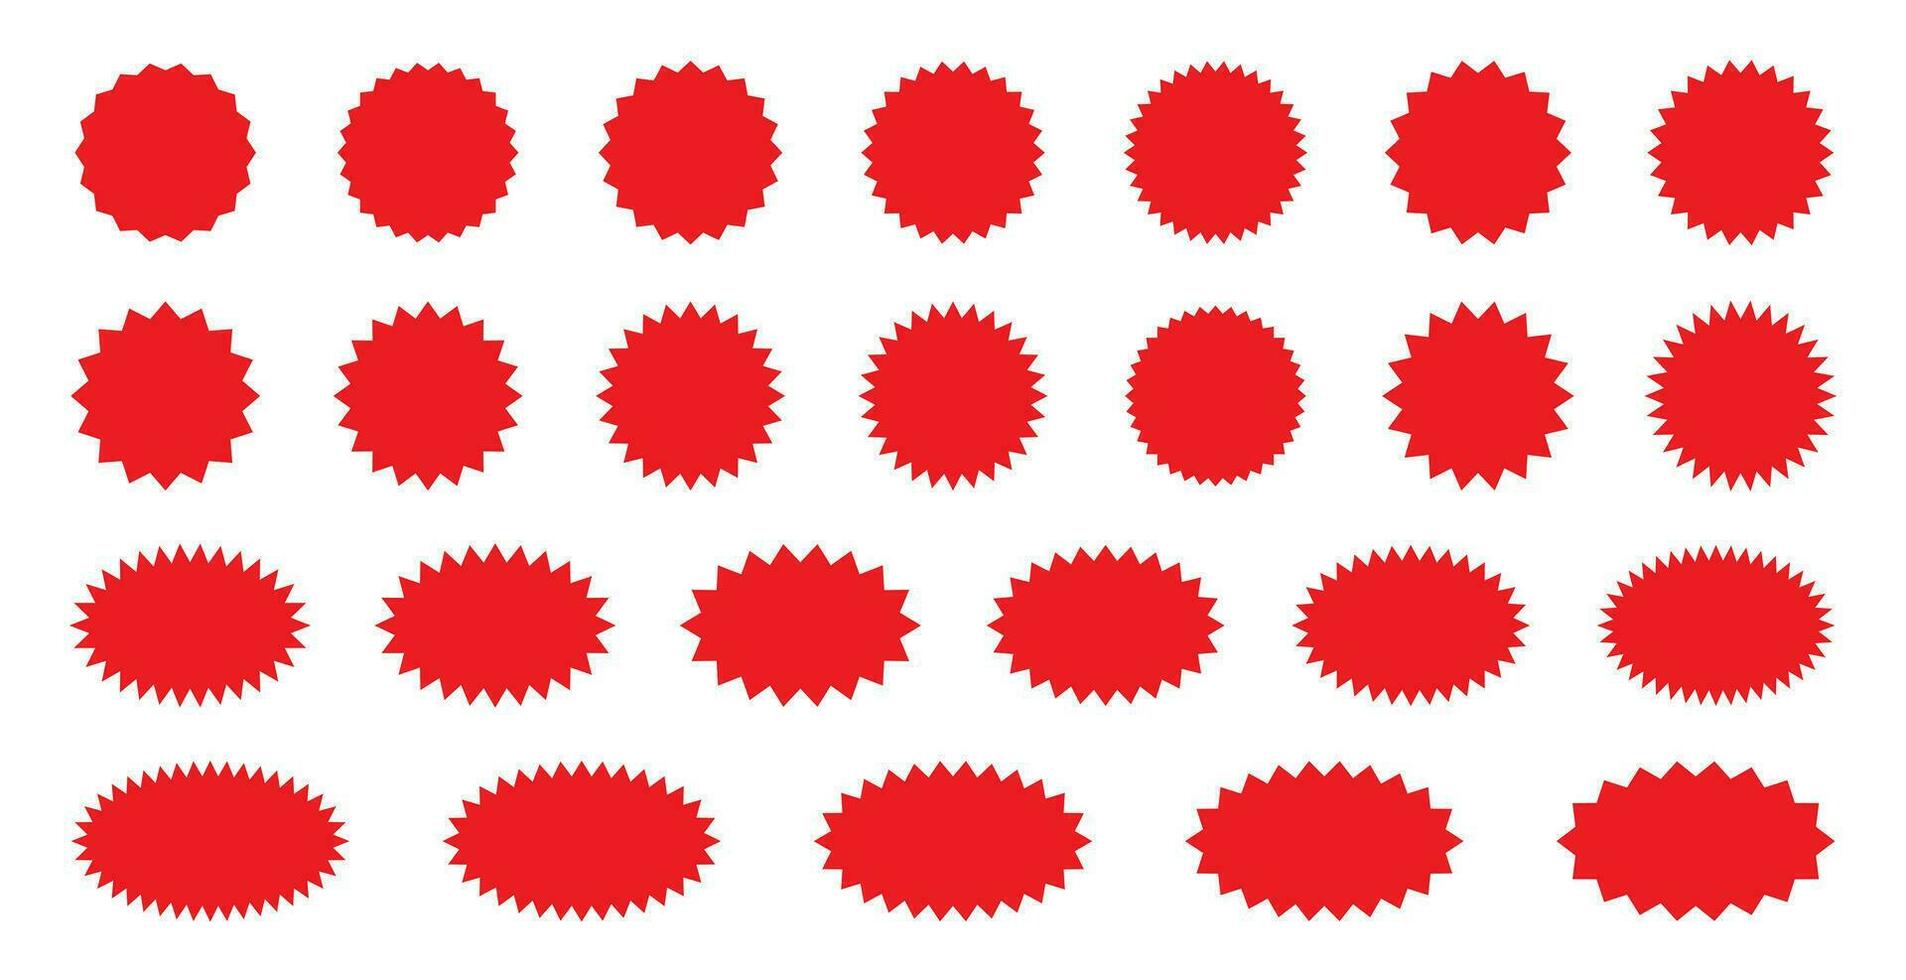 Starburst rot Aufkleber einstellen - - Sammlung von Besondere Angebot Verkauf runden und Oval Sunburst Etiketten und Tasten isoliert auf Weiß Hintergrund. Aufkleber und Abzeichen mit Star Kanten zum Promo Werbung. vektor